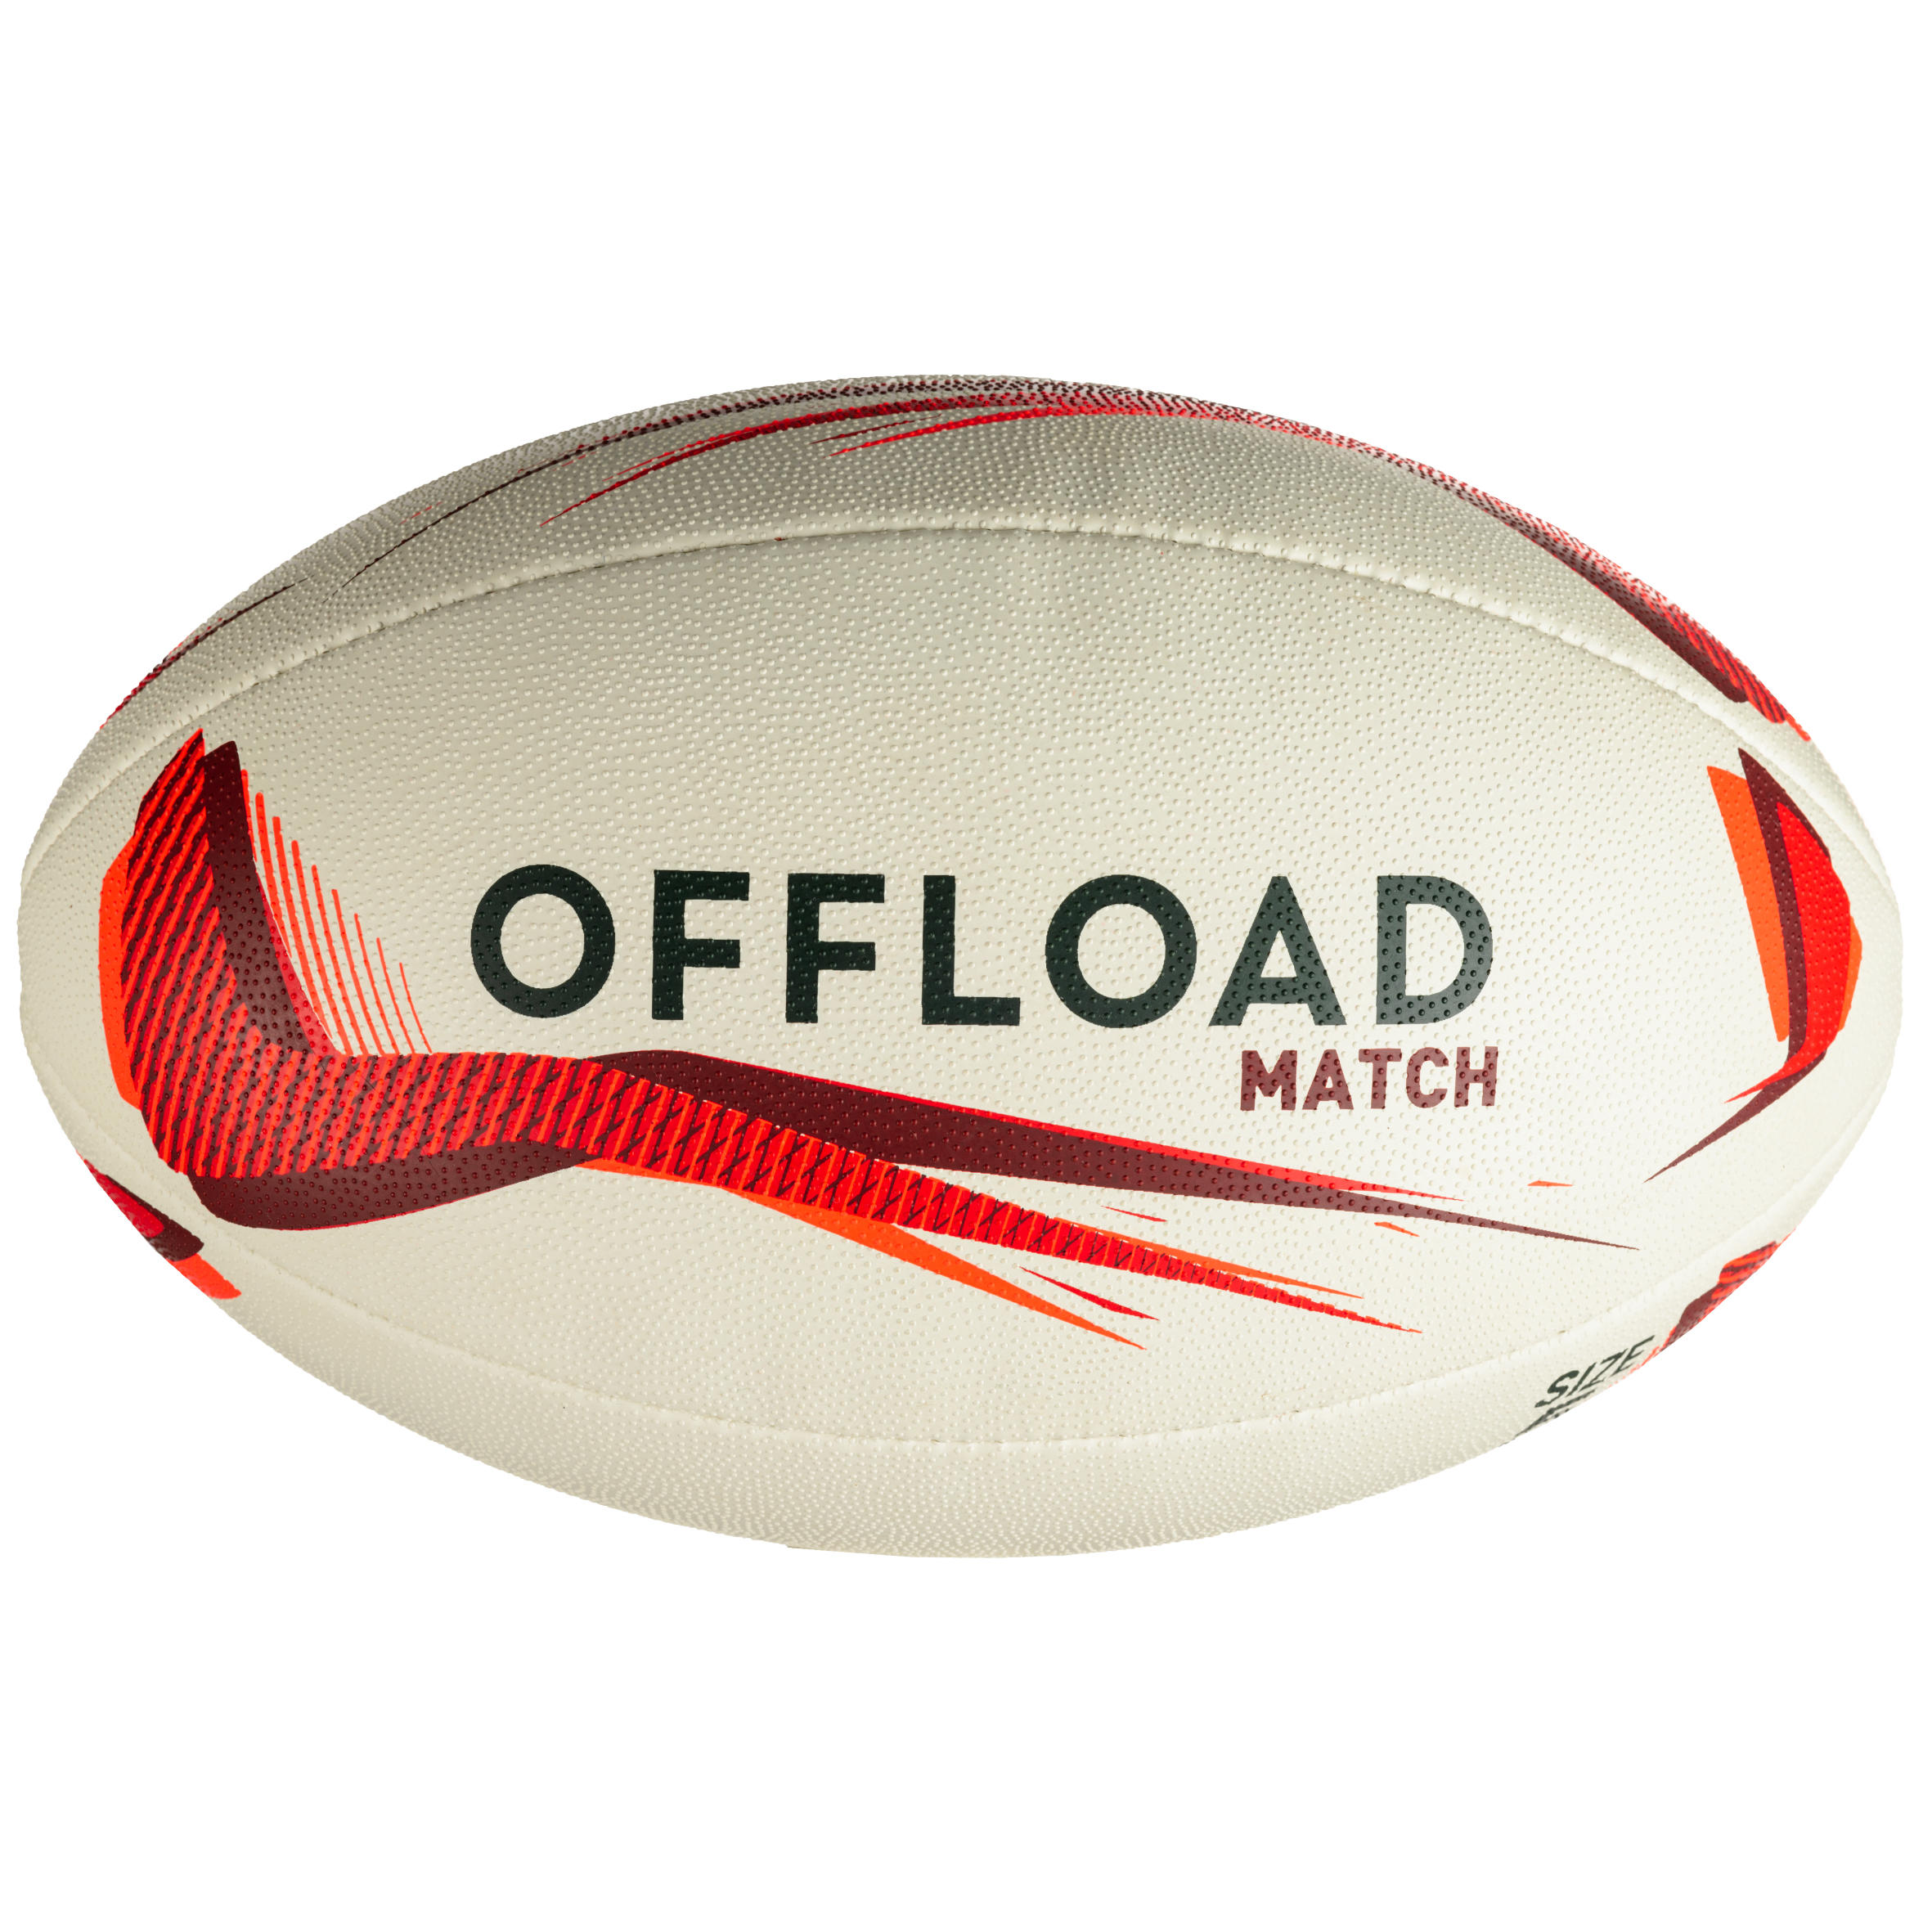 R500 Size 5 Rugby Ball - Decathlon